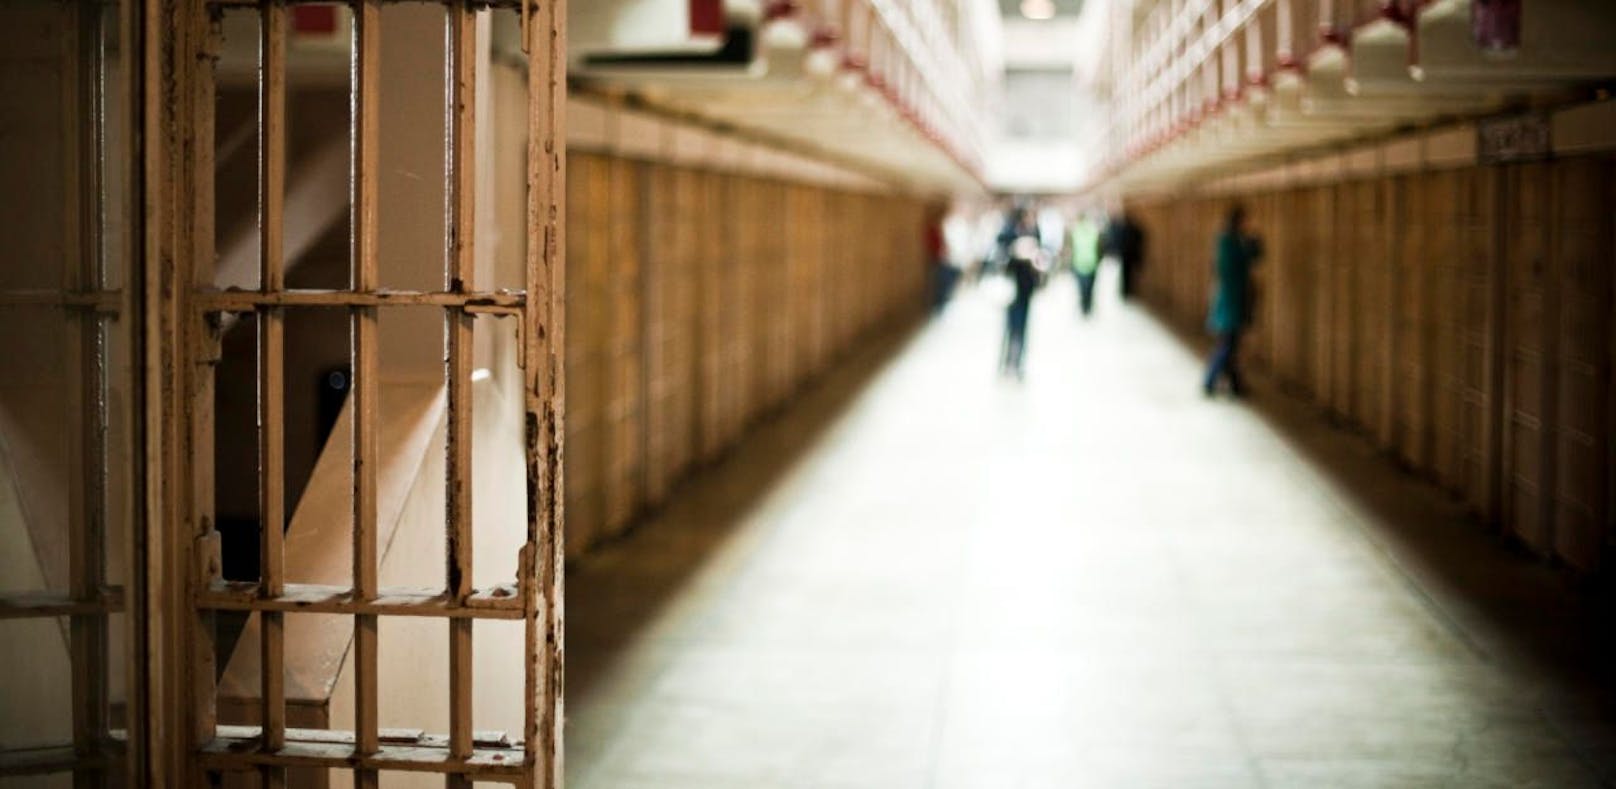 Insgesamt wurden heuer 138 Häftlinge vorzeitig freigelassen. 